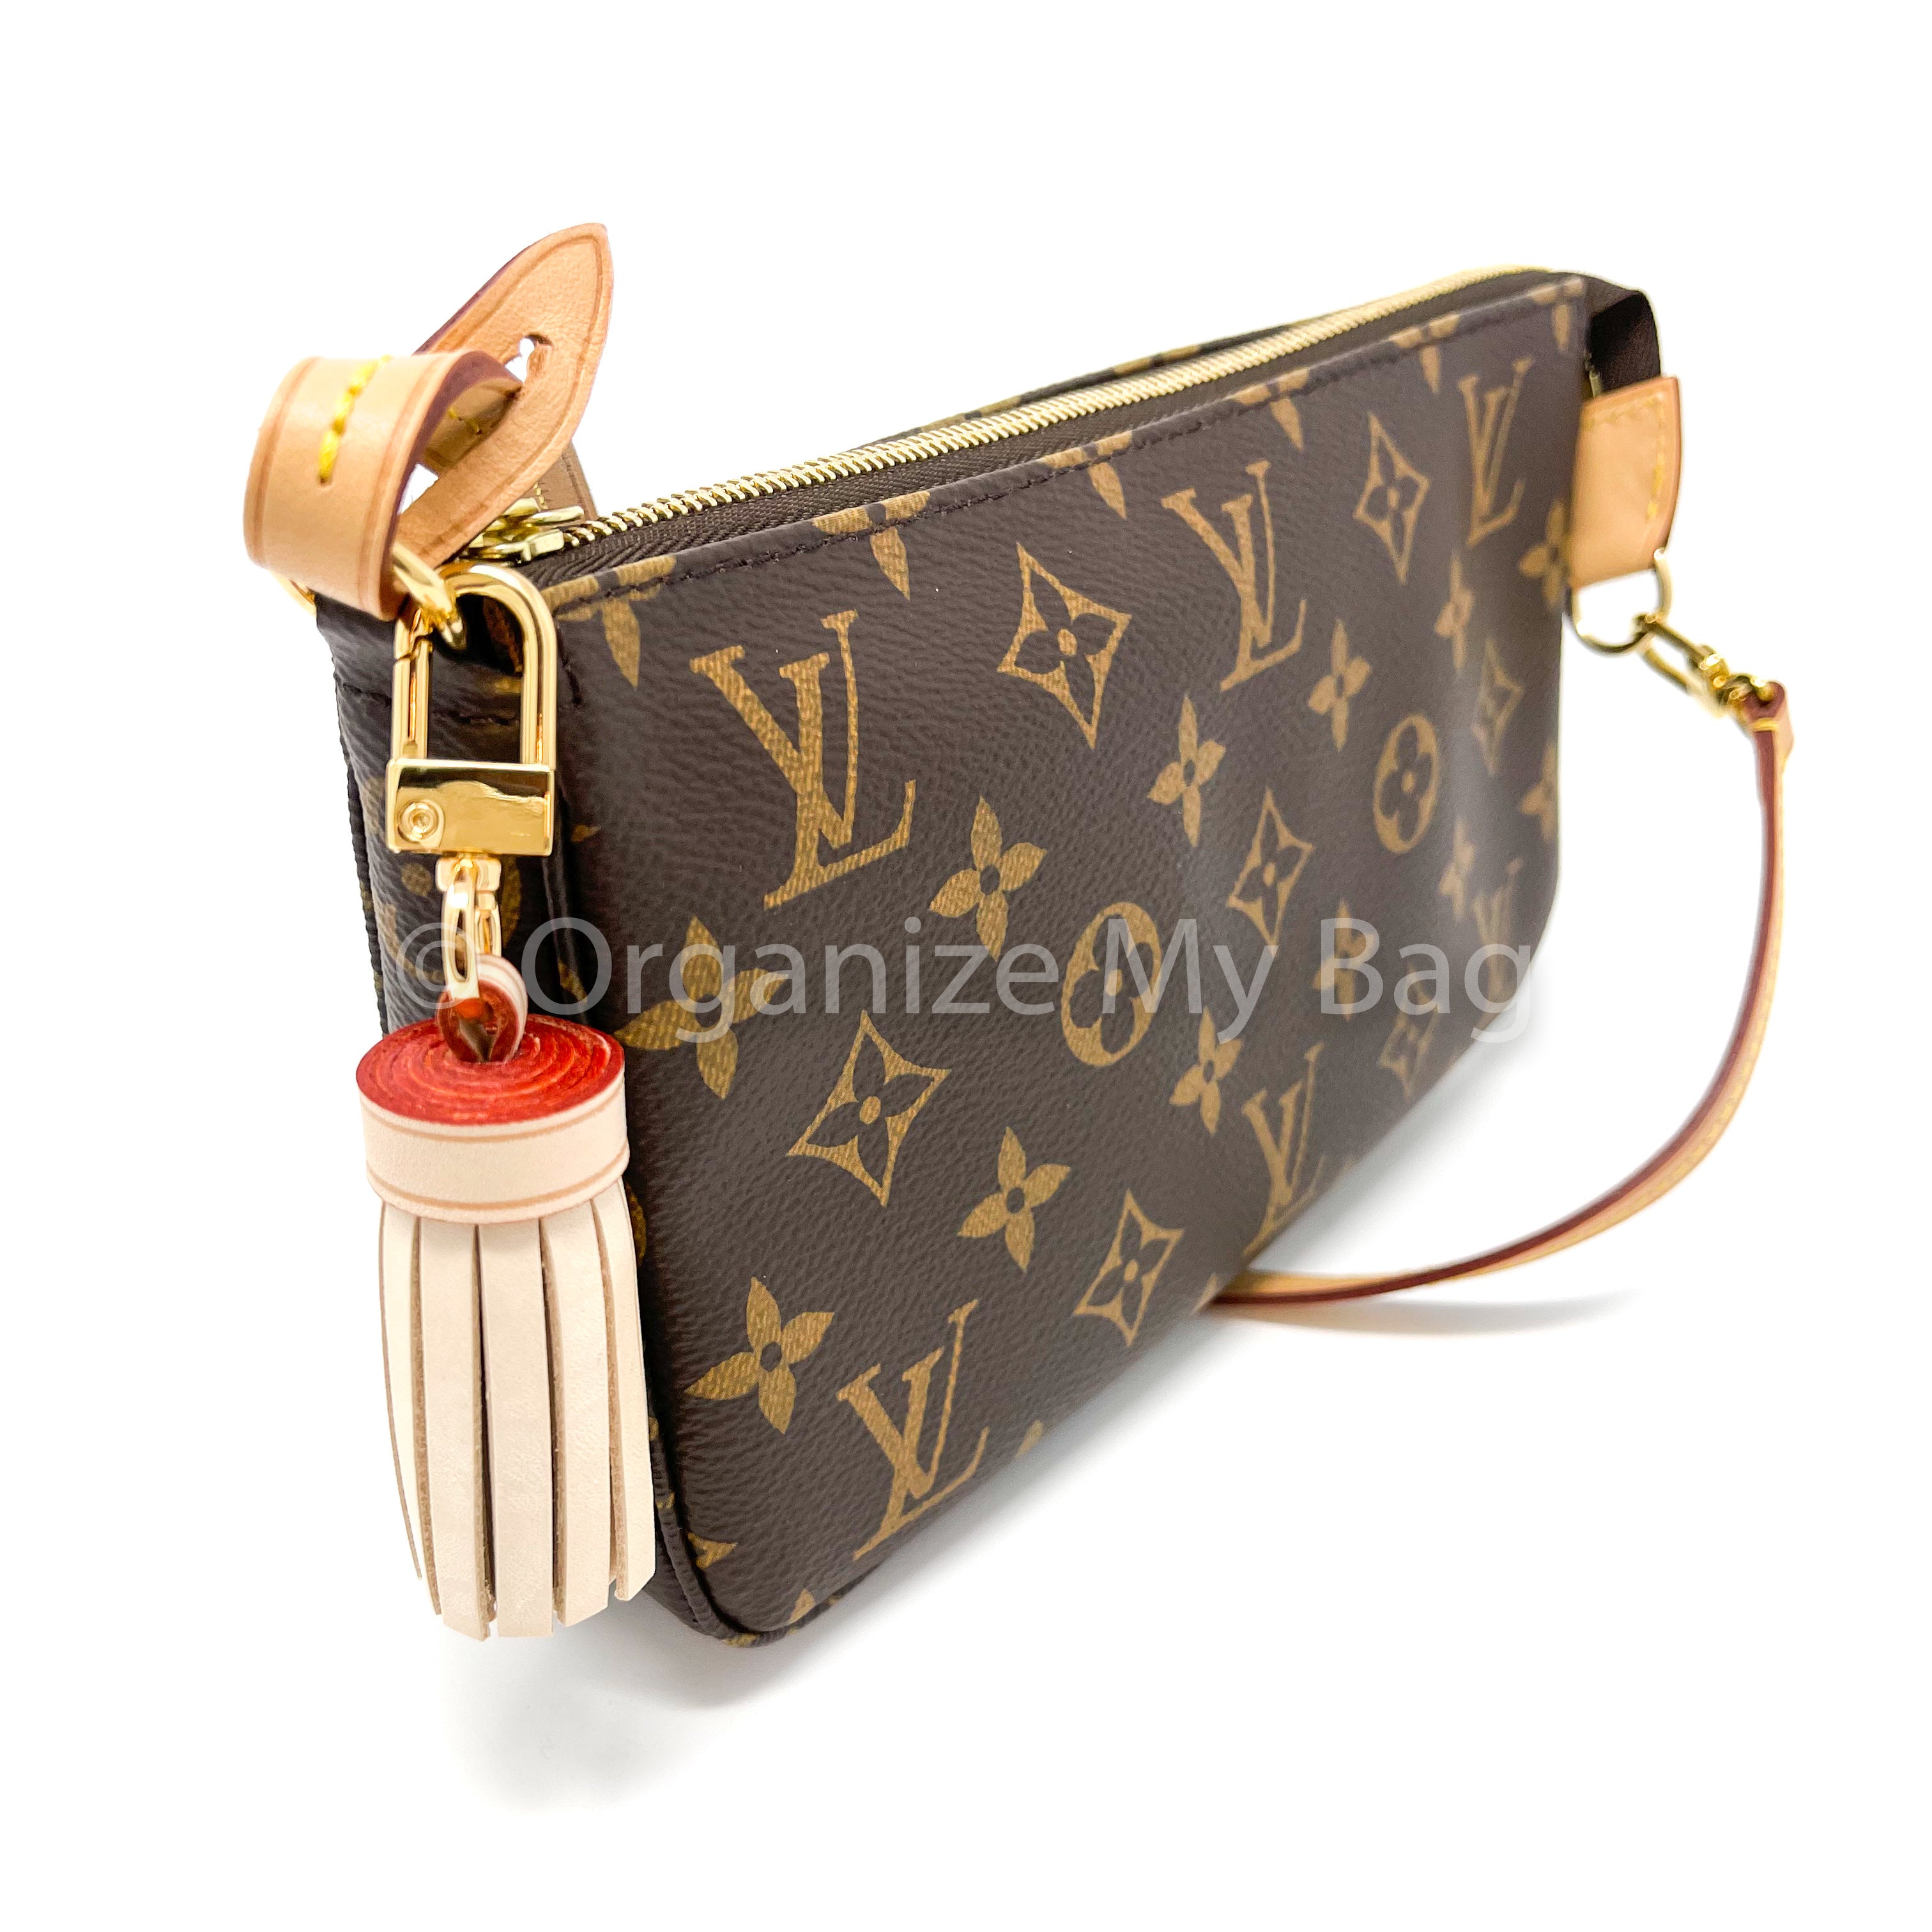 Louis Vuitton Monogram Canvas Tassel Bag Charm Brown